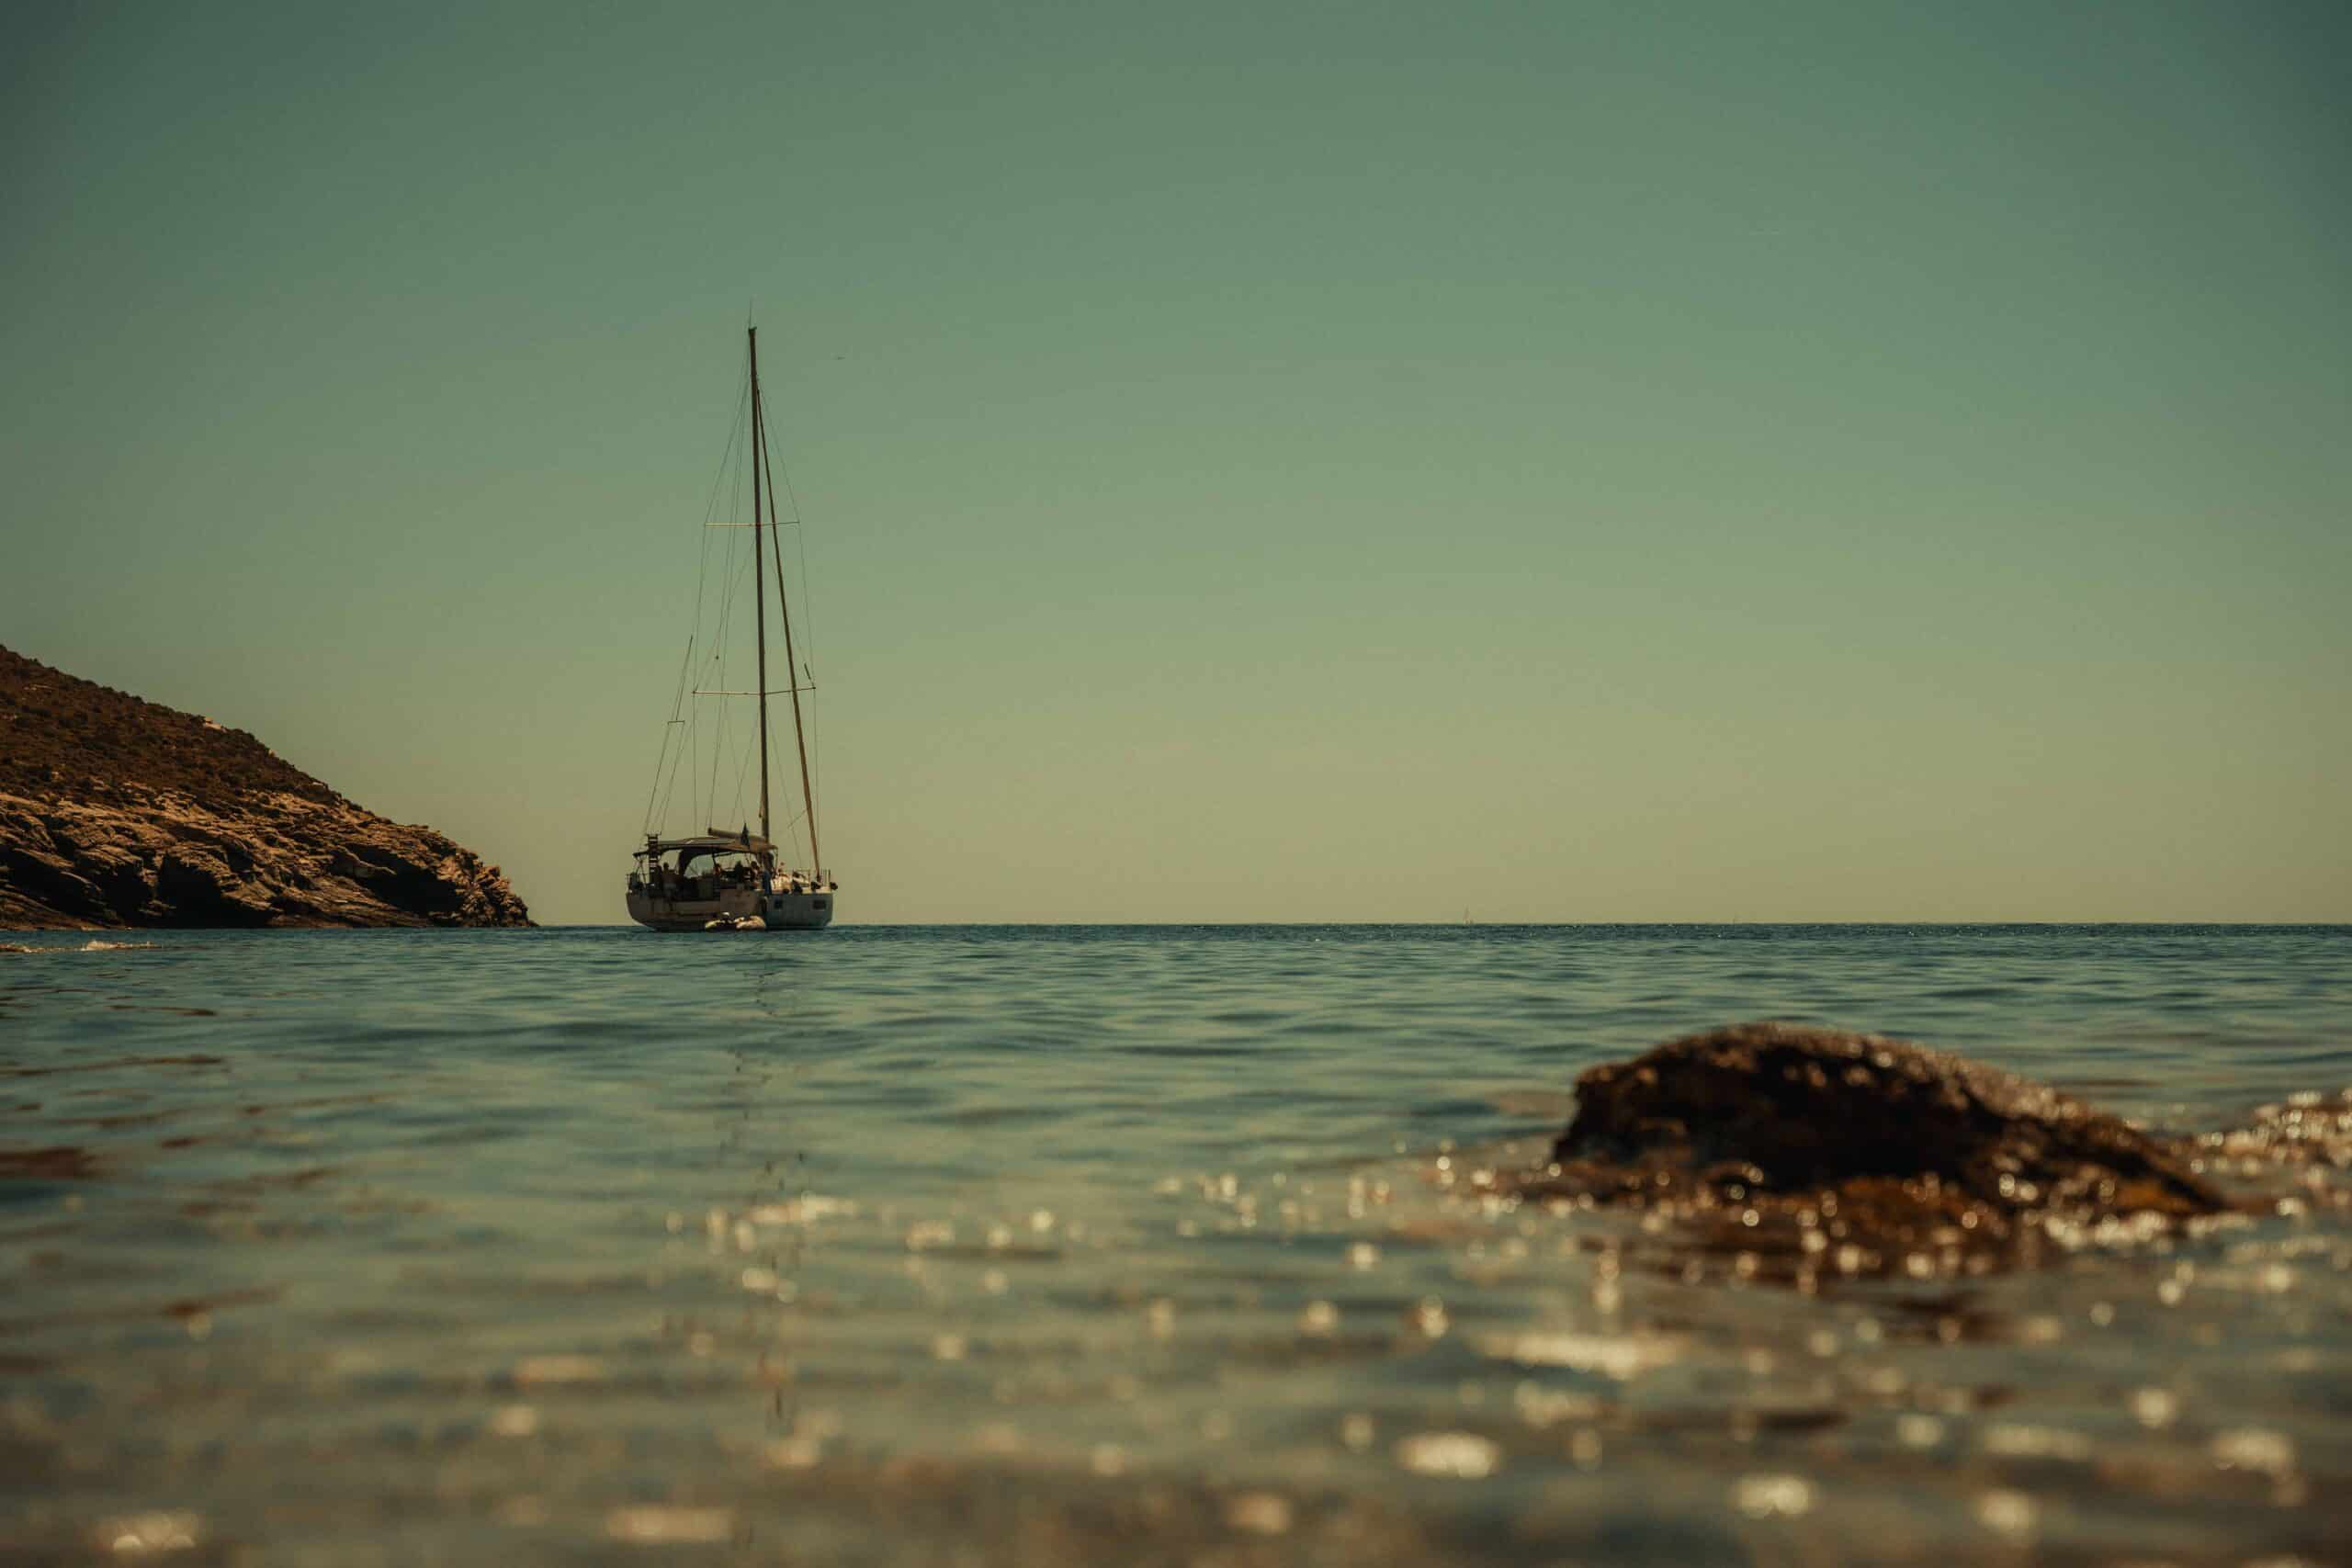 Ein Segelboot liegt in Ufernähe vor Anker. Im Hintergrund ist eine felsige Küste zu sehen. Das ruhige, klare Wasser unter einem ruhigen Himmel vermittelt ein Gefühl der Ruhe und fängt die Ruhe der Segeln-Szene ein. Im Vordergrund trägt ein kleiner, sonnenbeschienener Felsen zur malerischen Kulisse bei.